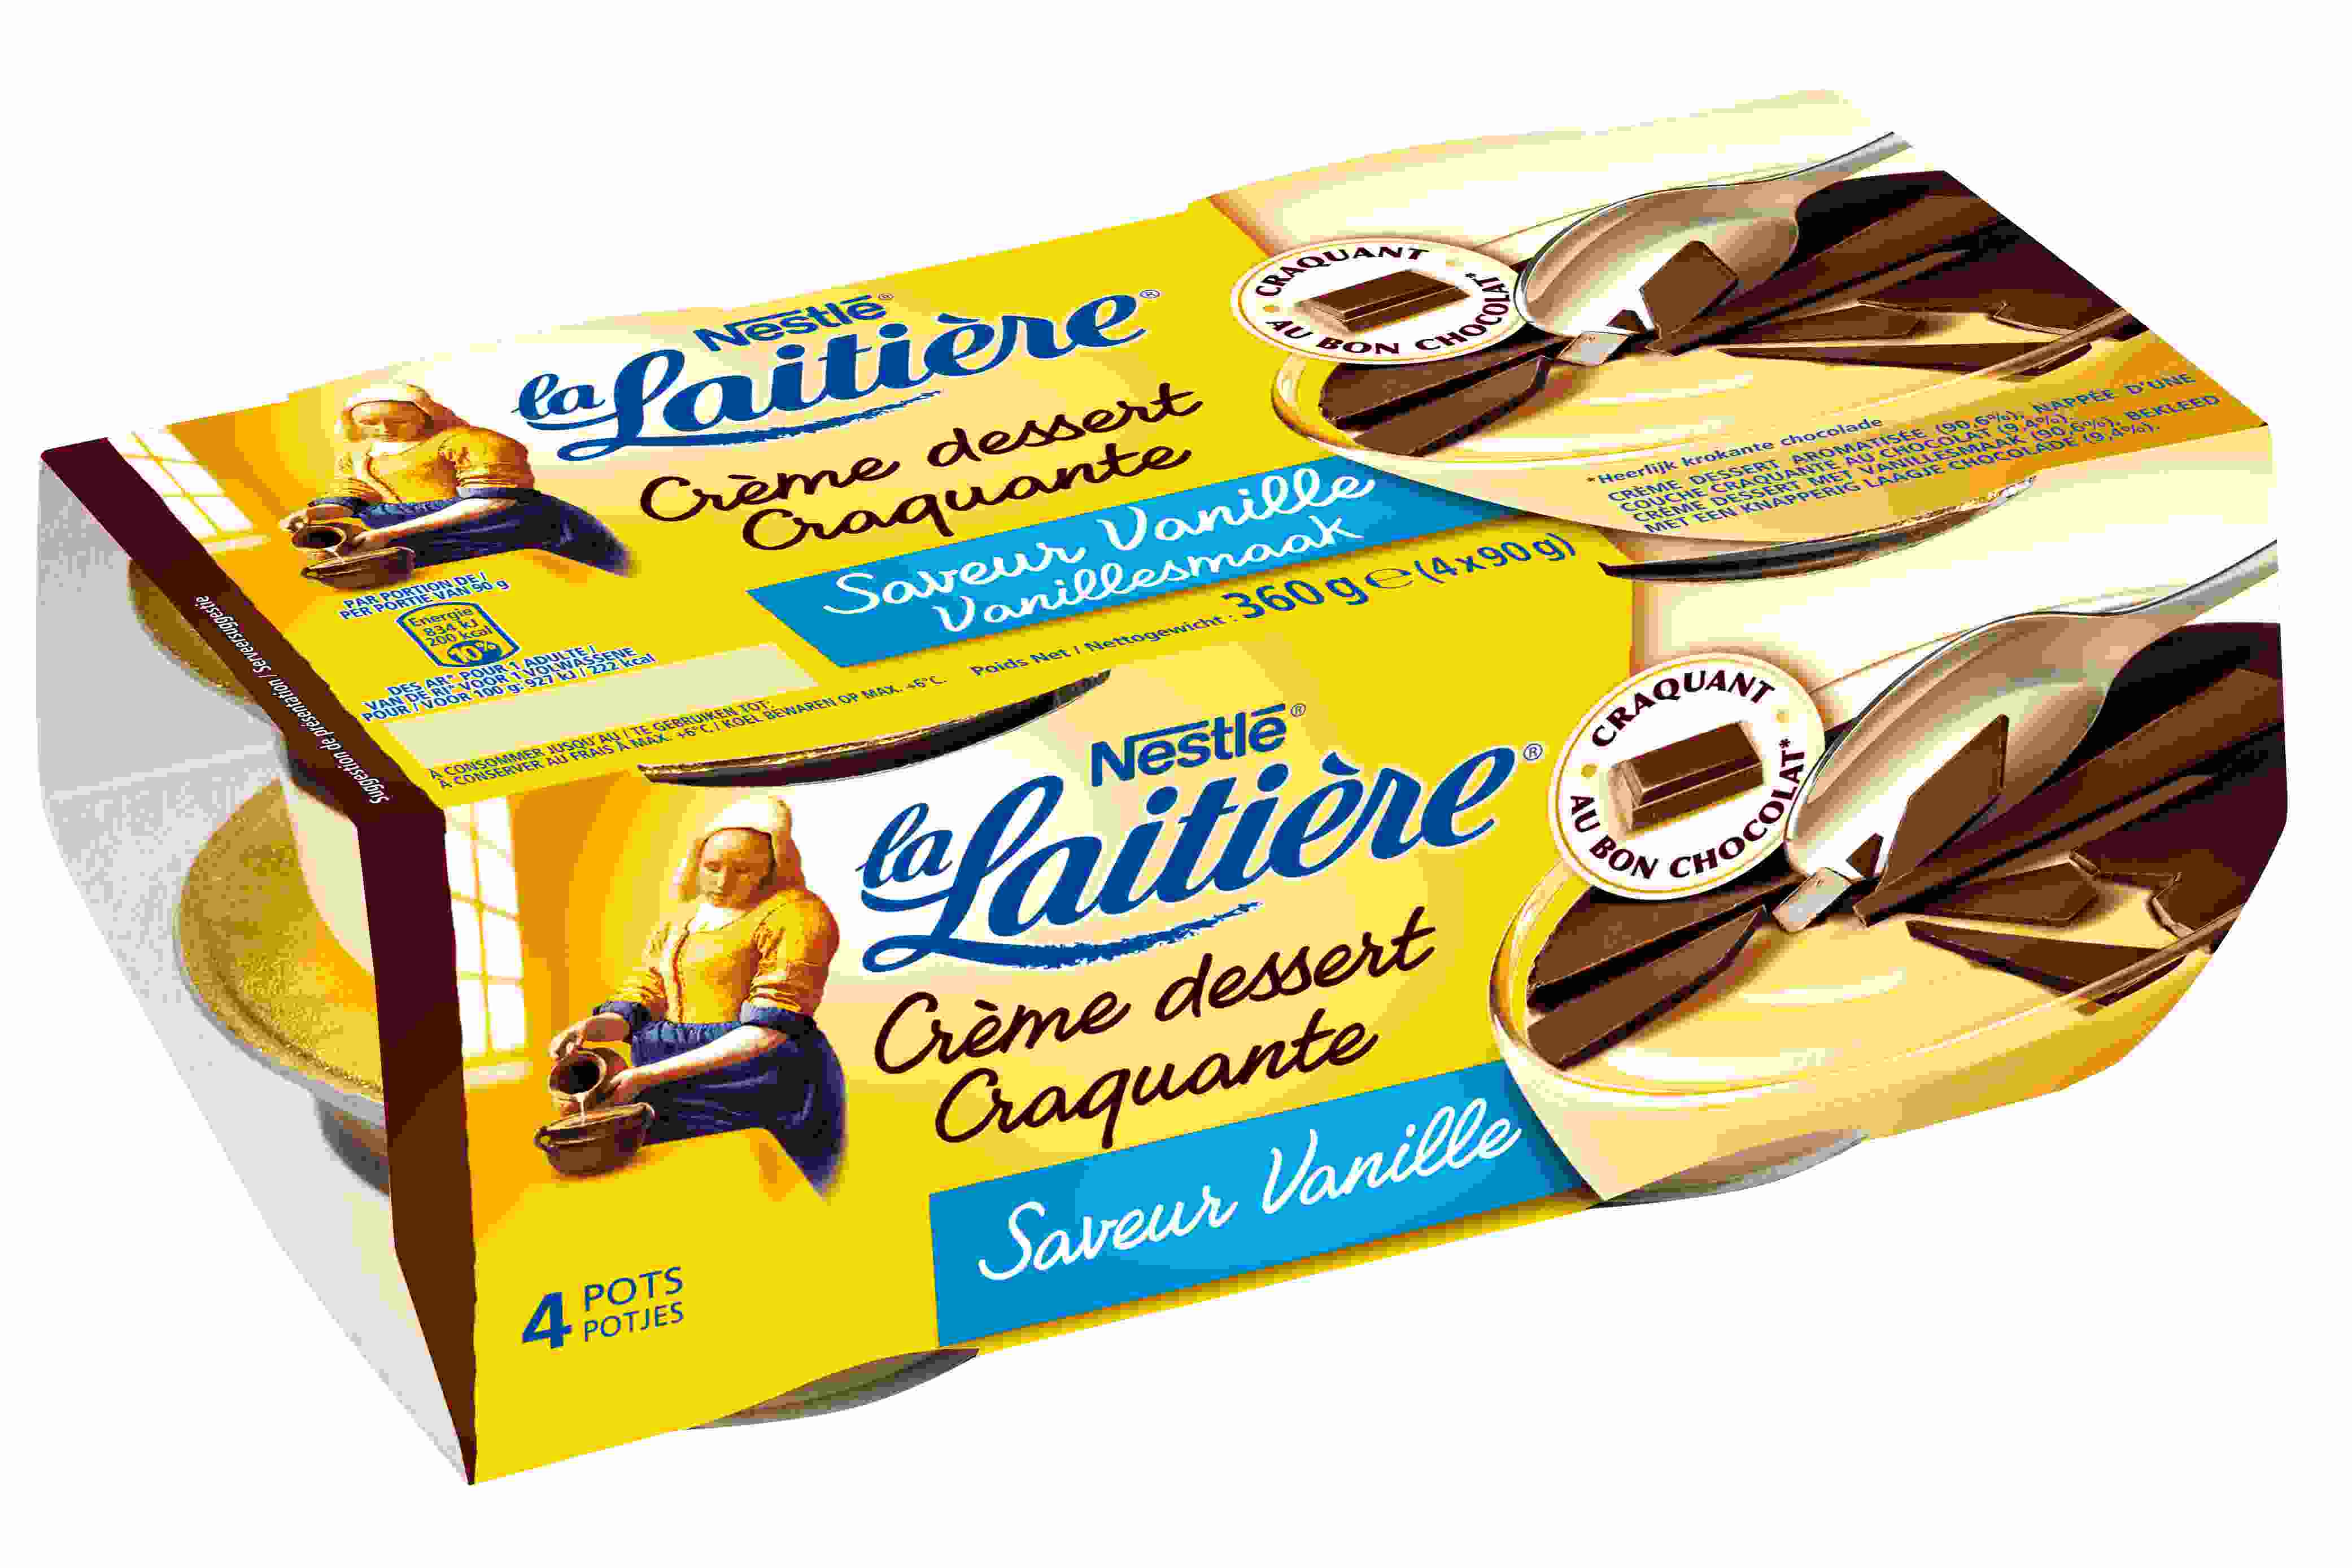 Crème dessert craquante saveur vanille La Laitière